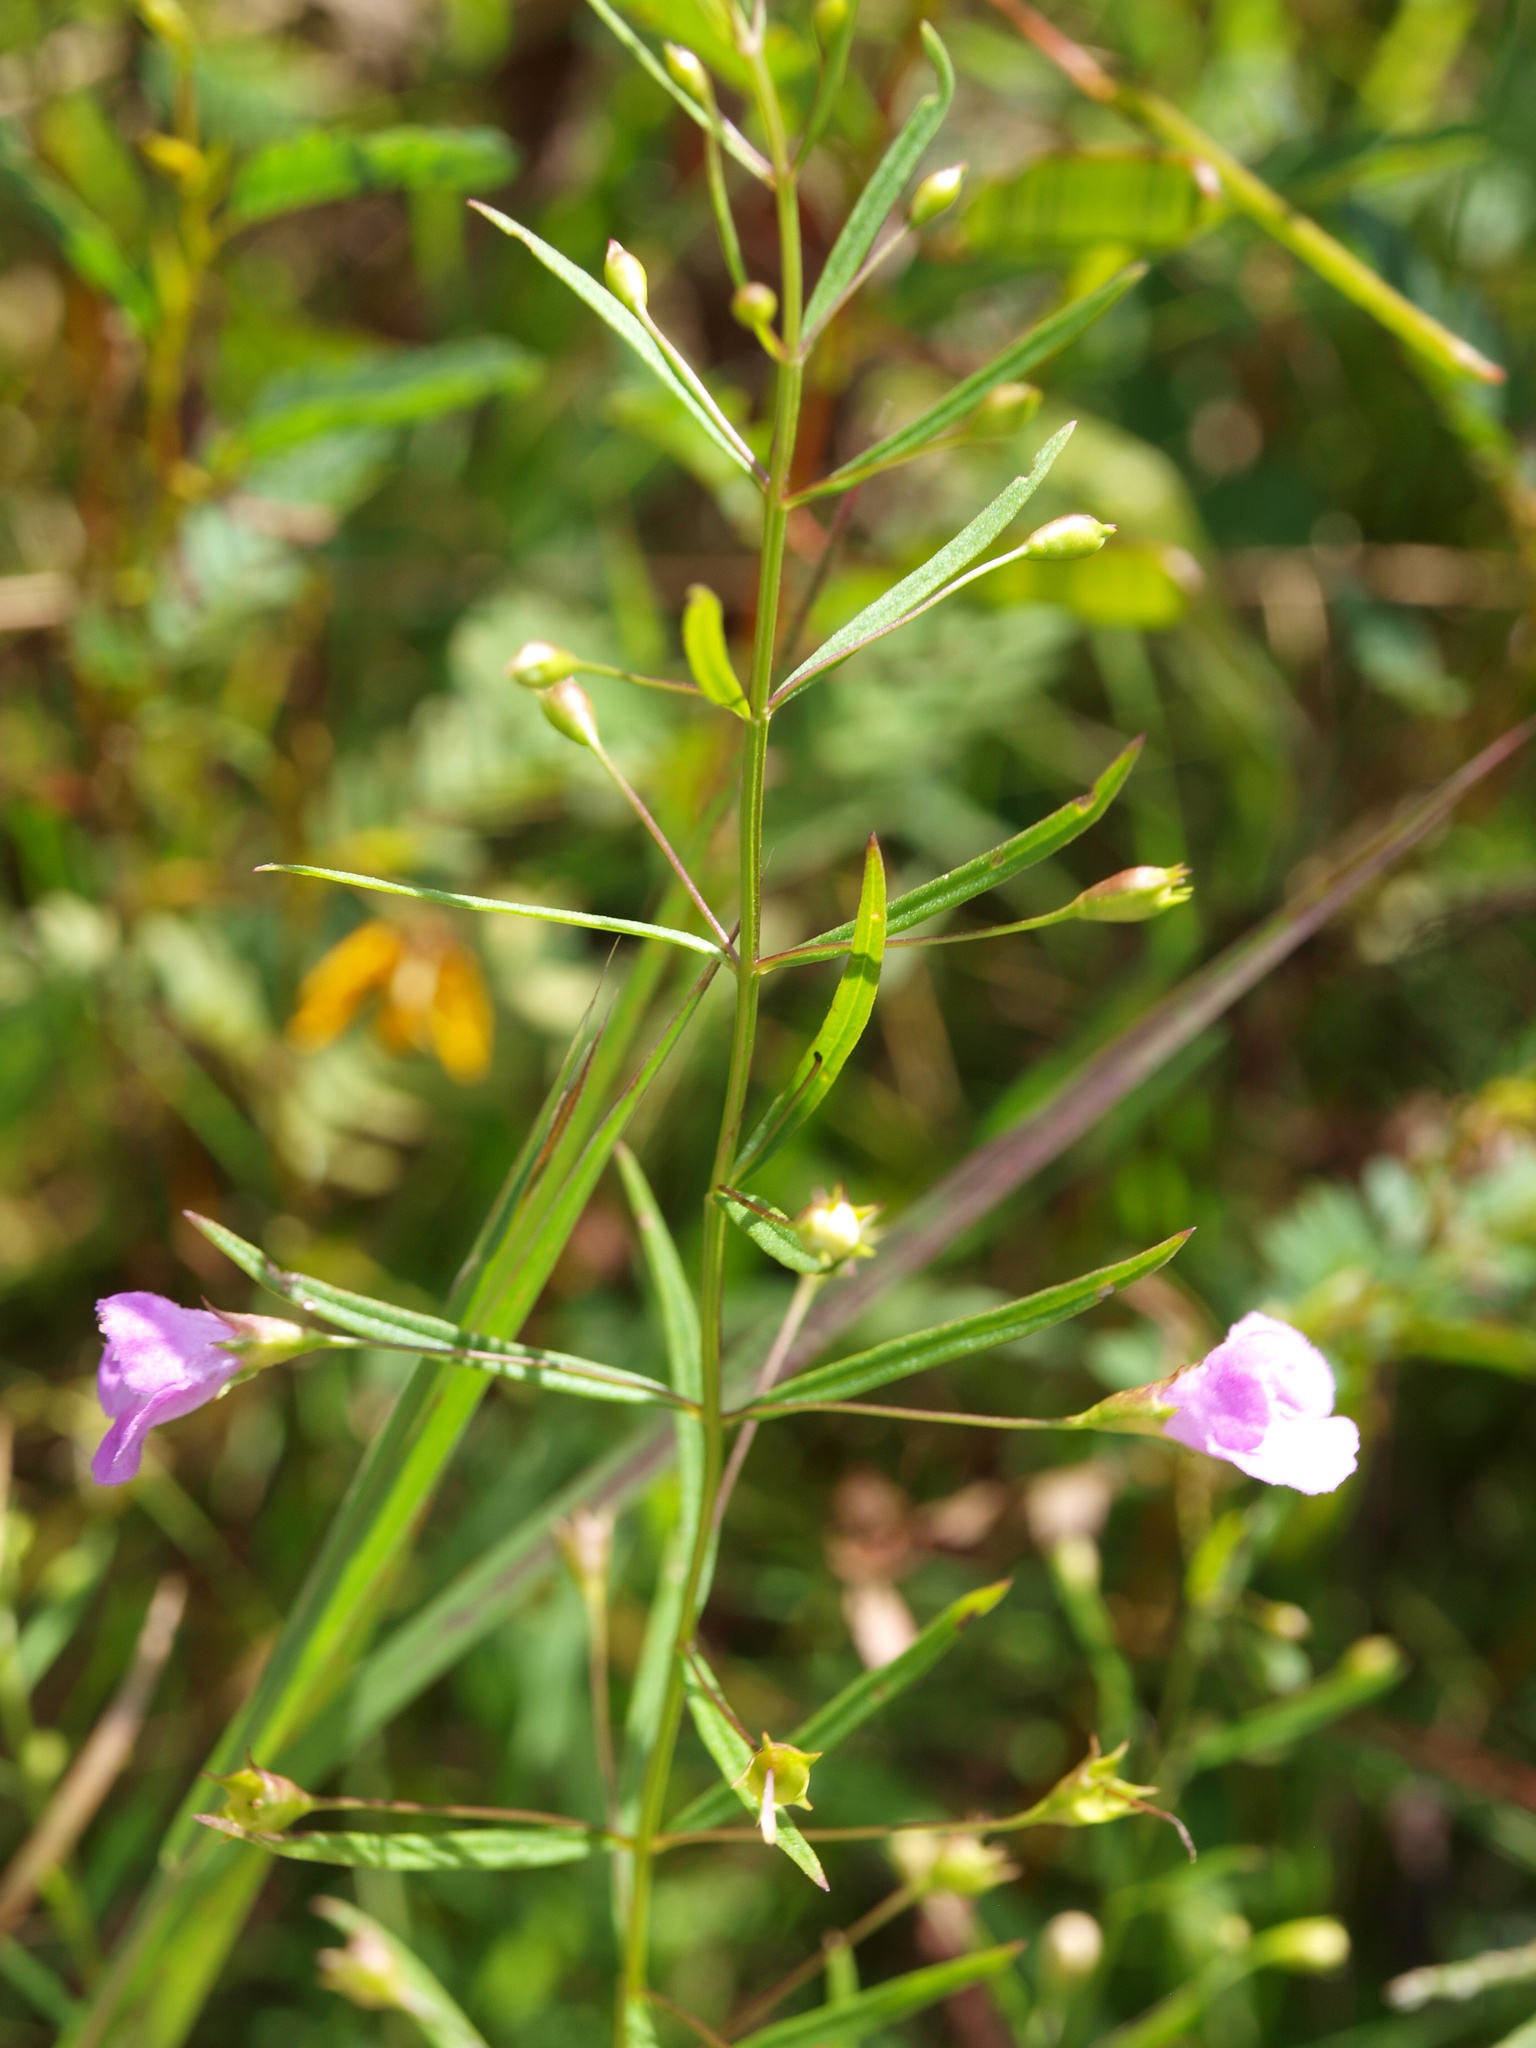 Image of <i>Agalinis tenuifolia</i>